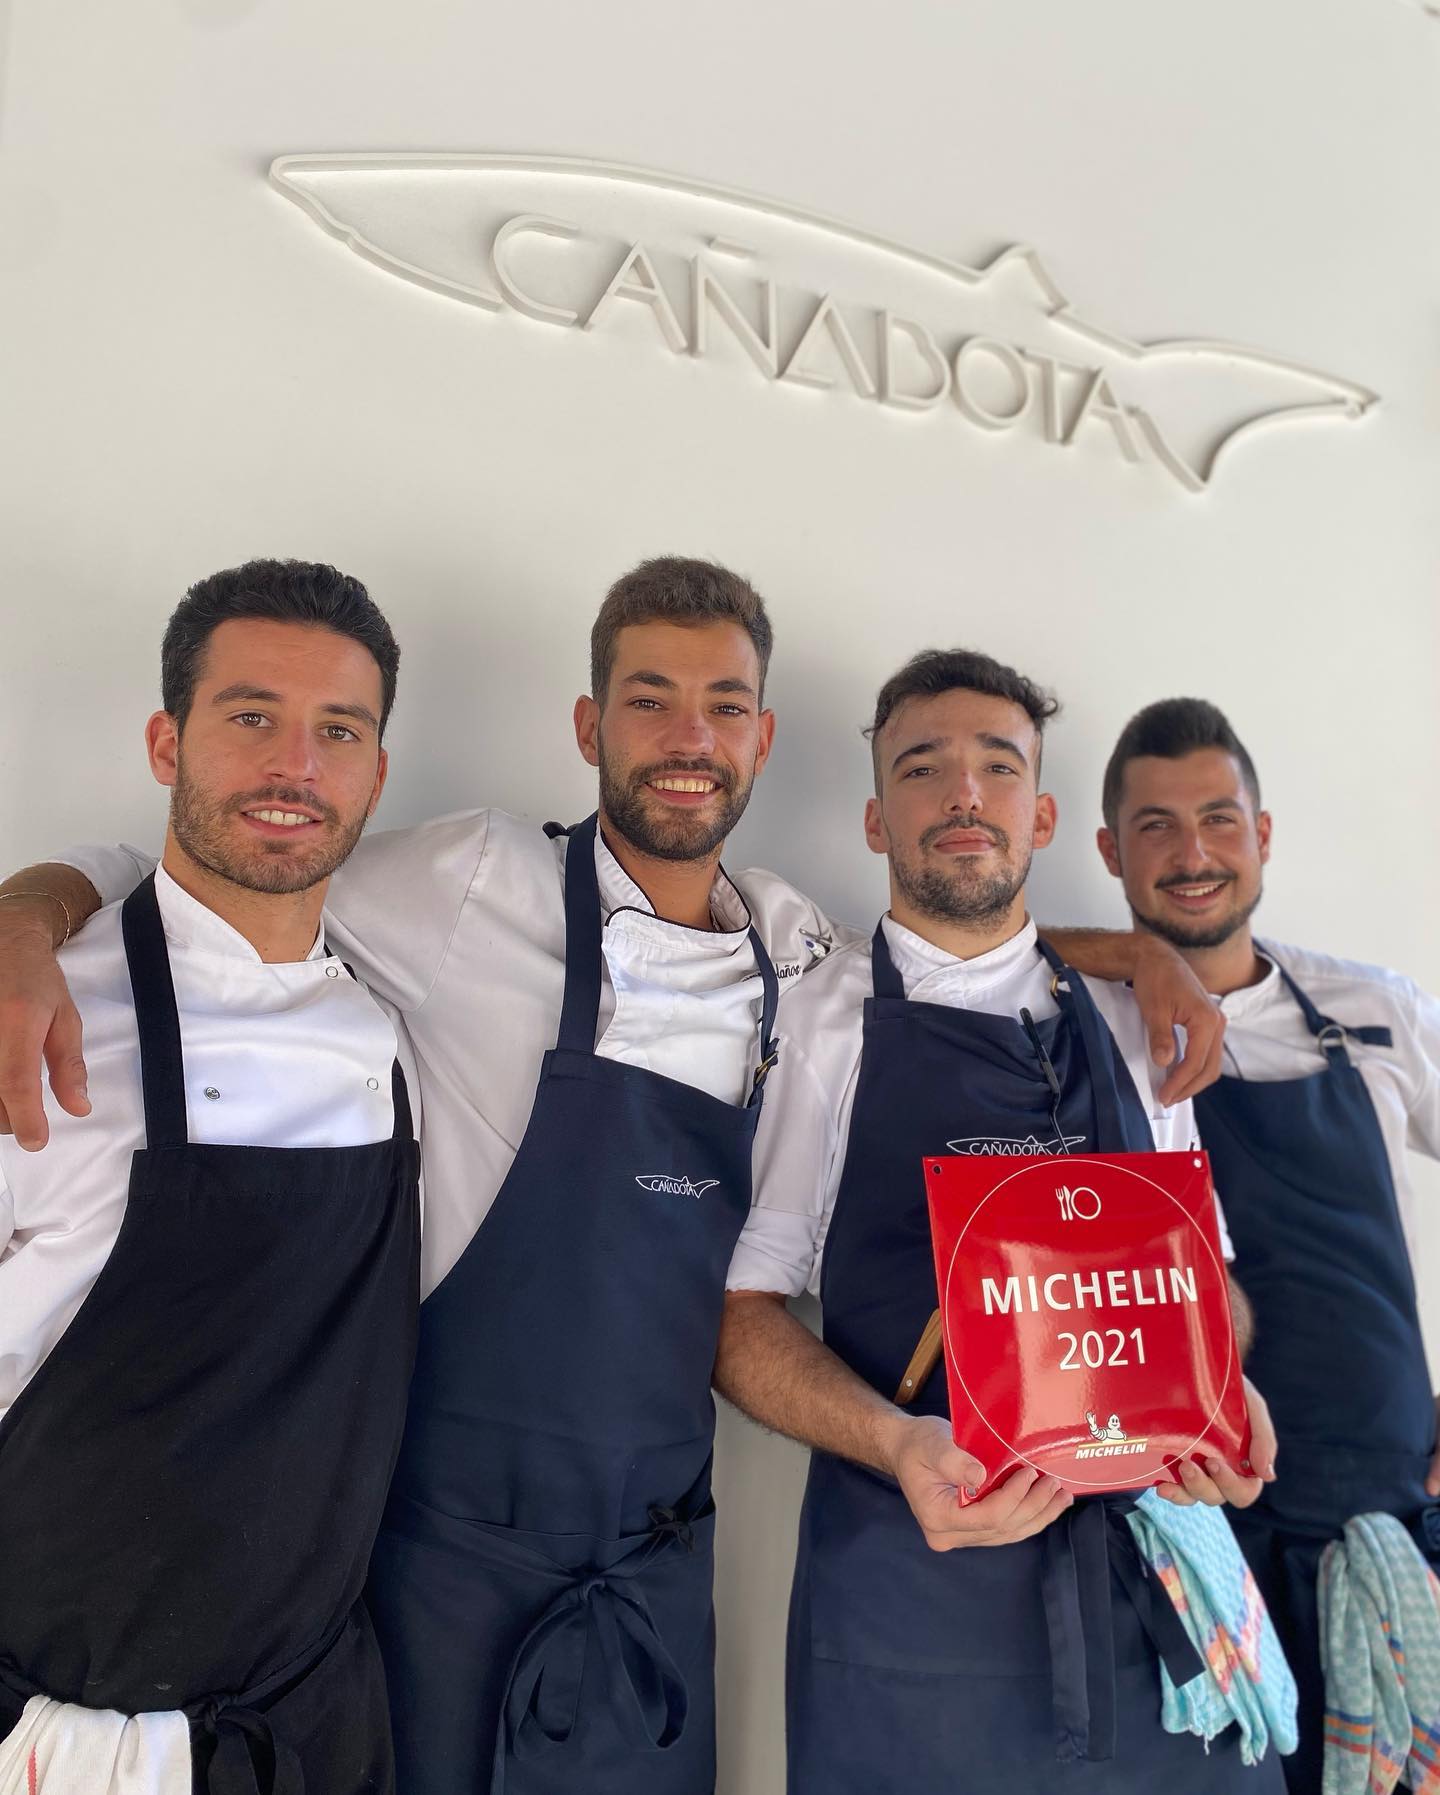 El restaurante sevillano Cañabota logra su primera estrella Michelin